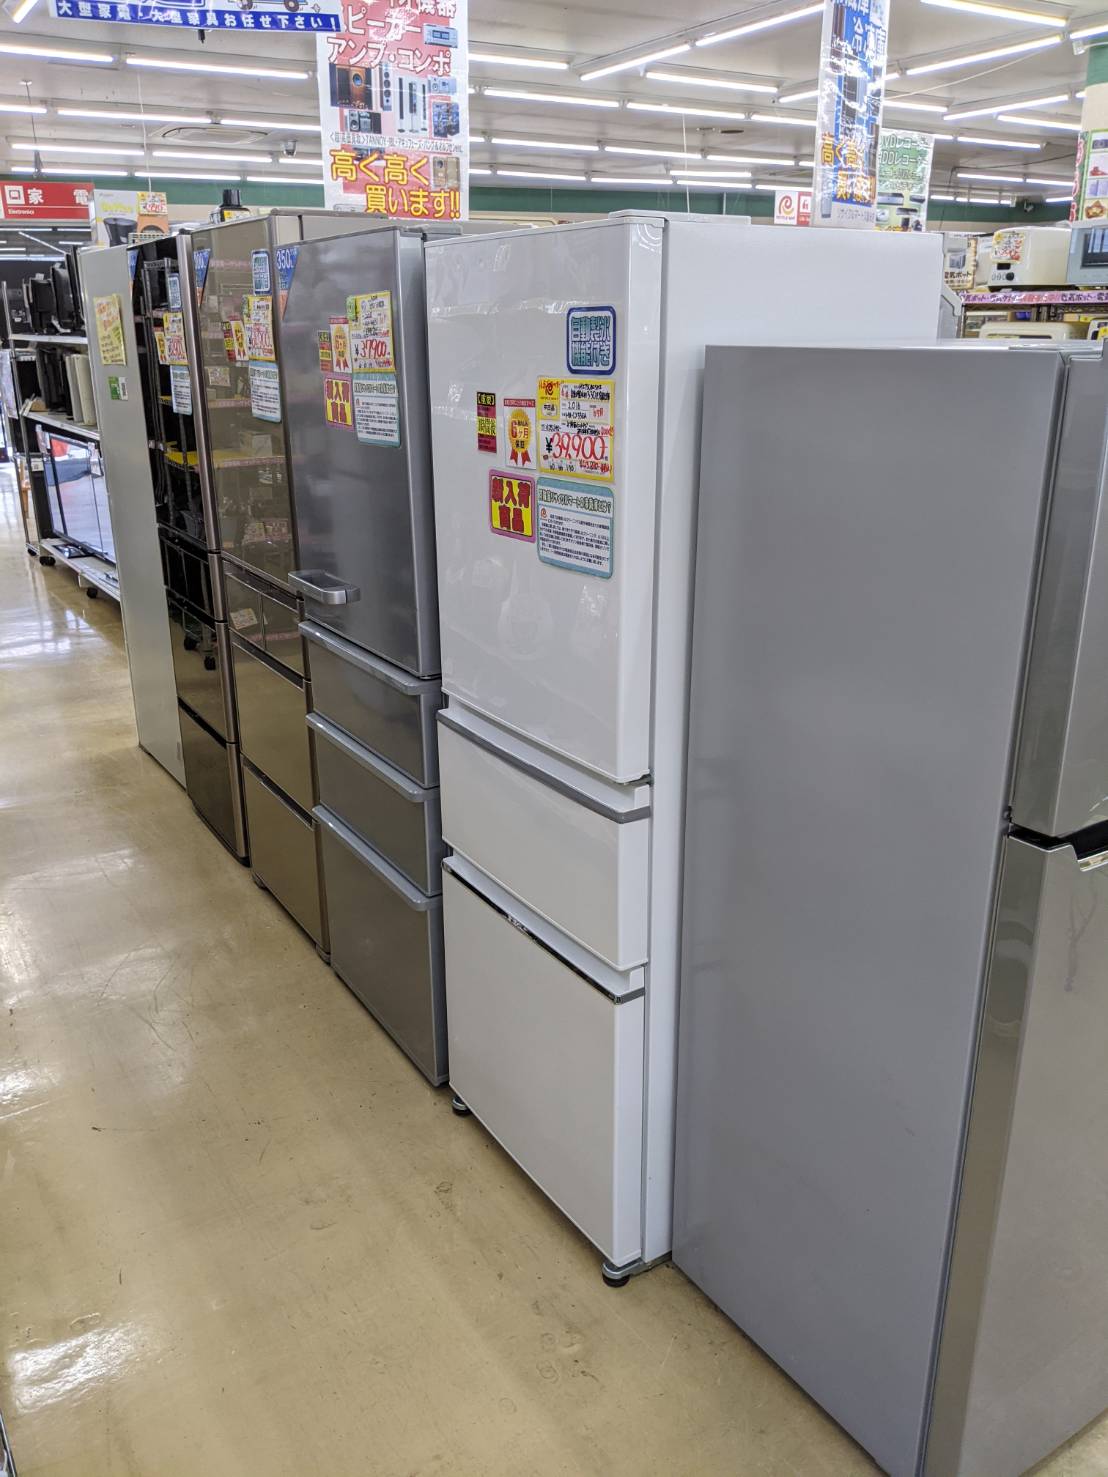 ファミリータイプ冷蔵庫、大型冷蔵庫、高価買取り致します!!